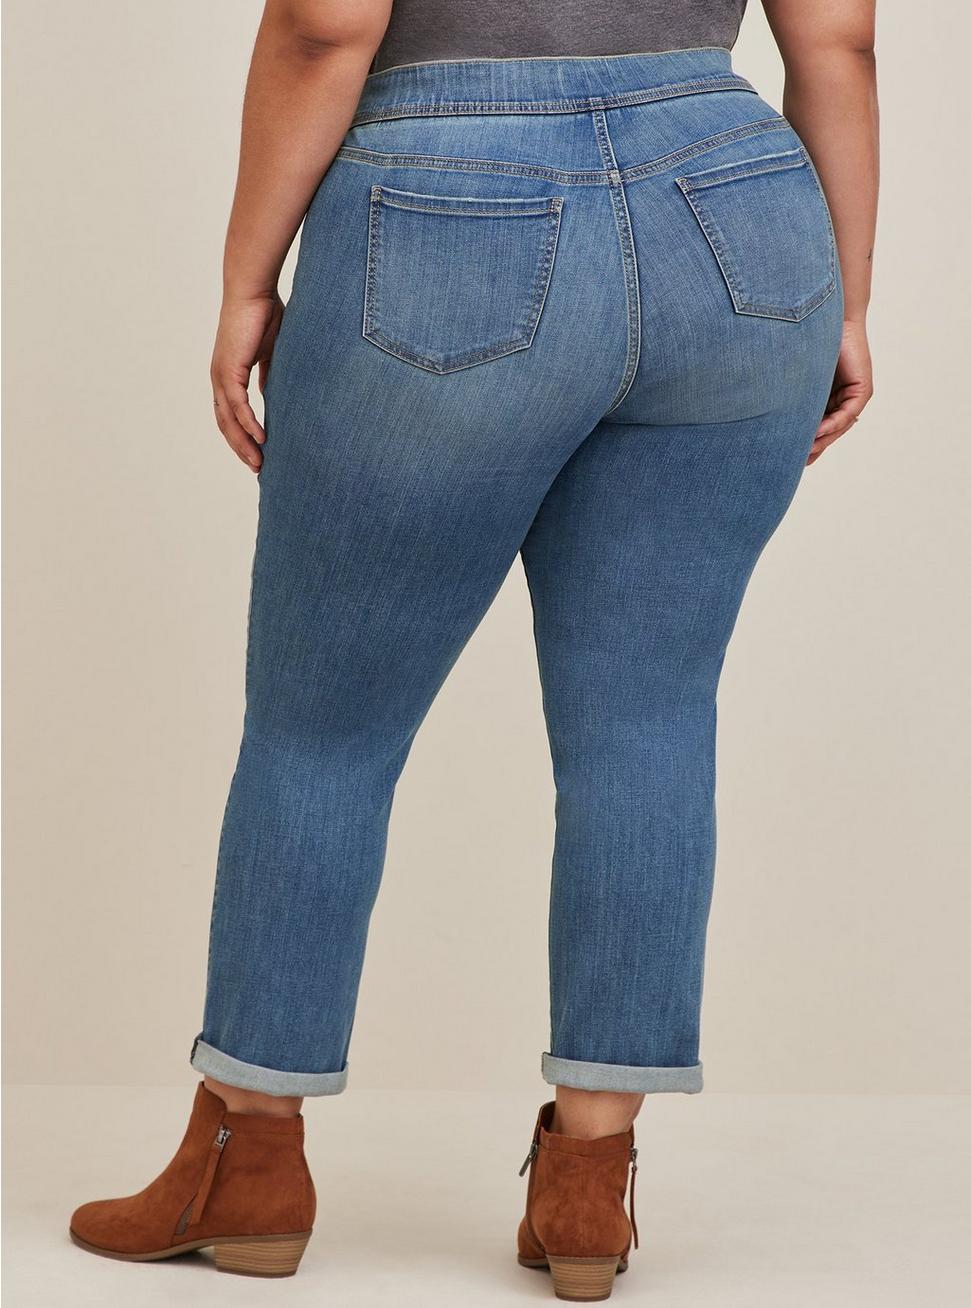 Lean Jean Straight Super Soft High-Rise Jean, MARITIME, alternate